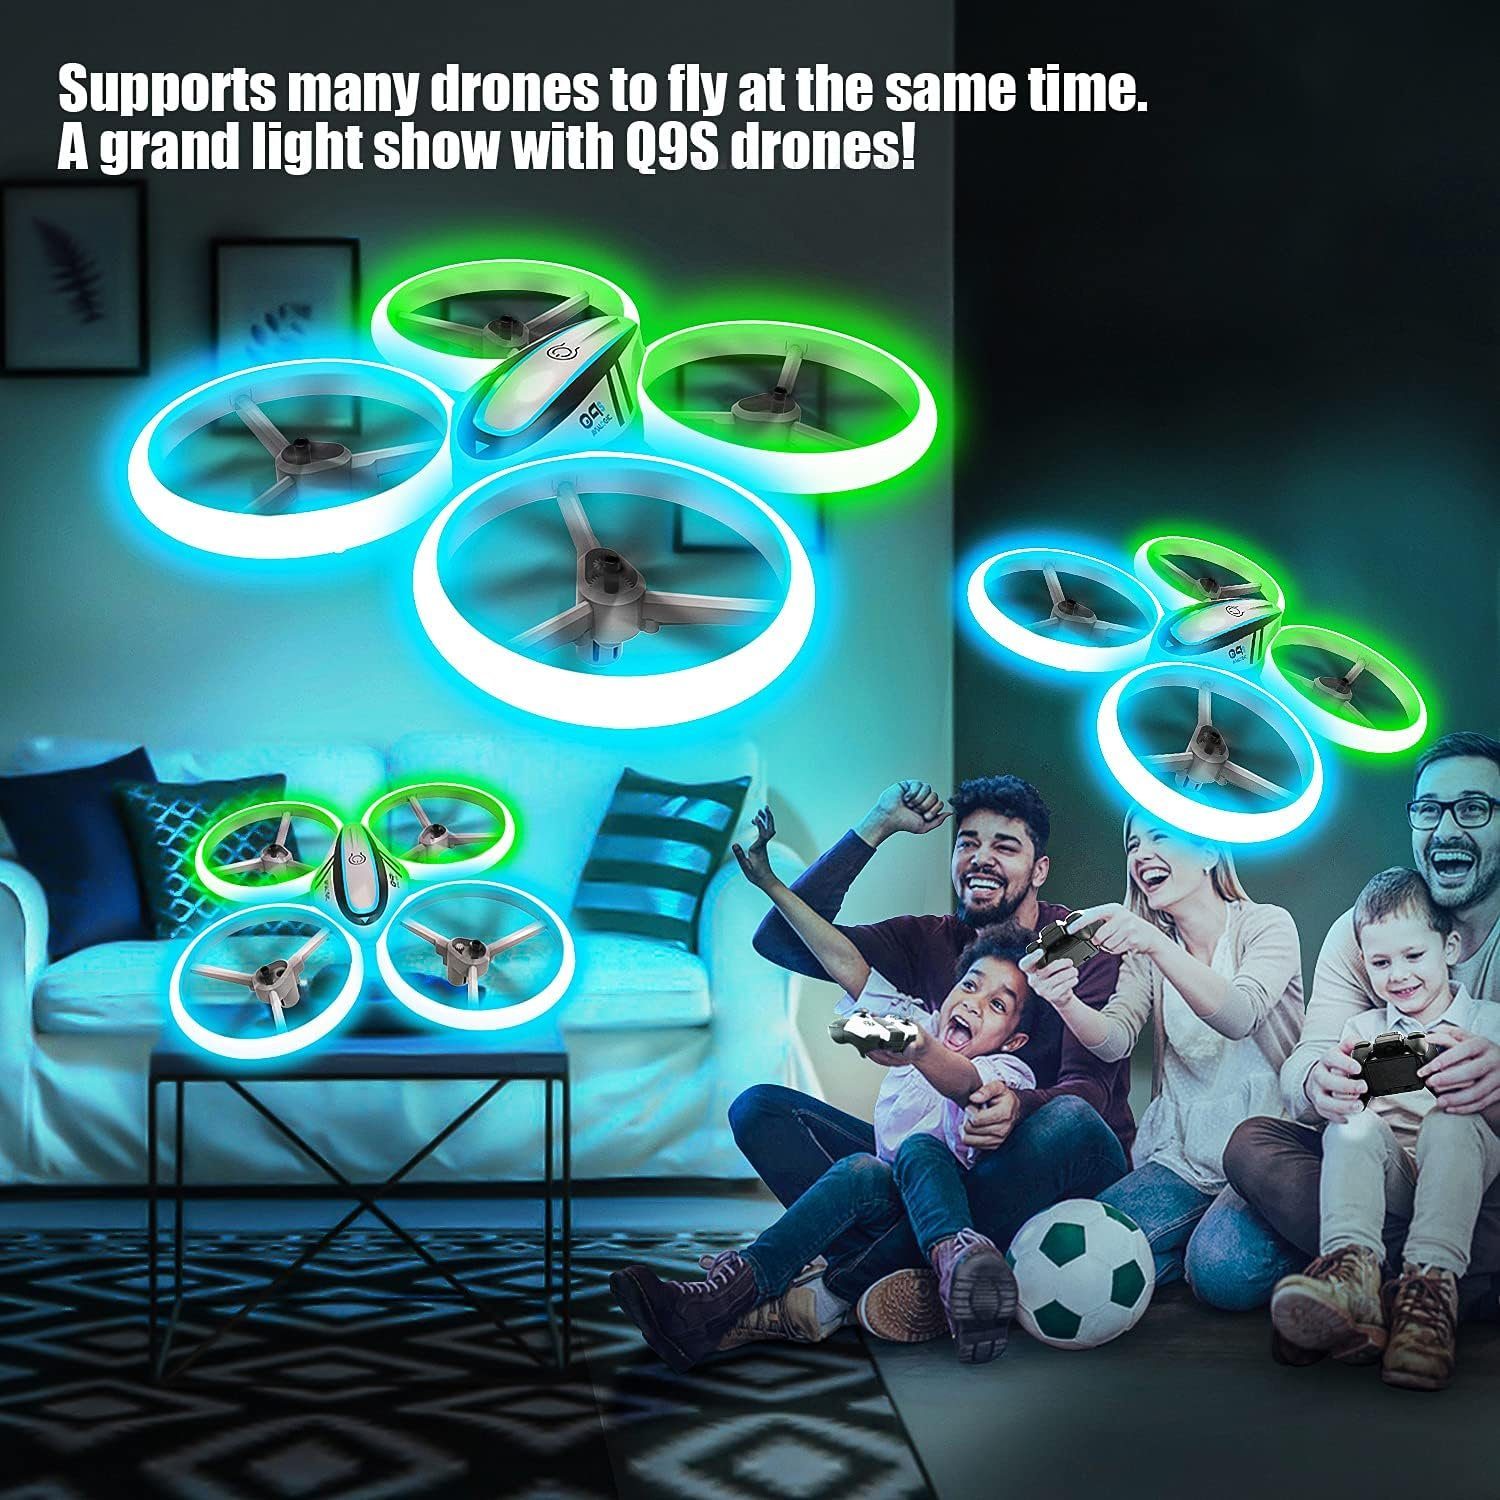 AVIALOGIC Drohne (Kinderdrohne Blau & Akkus) mit Grünlicht, 2 Höhenhalt, Kopflosmodus